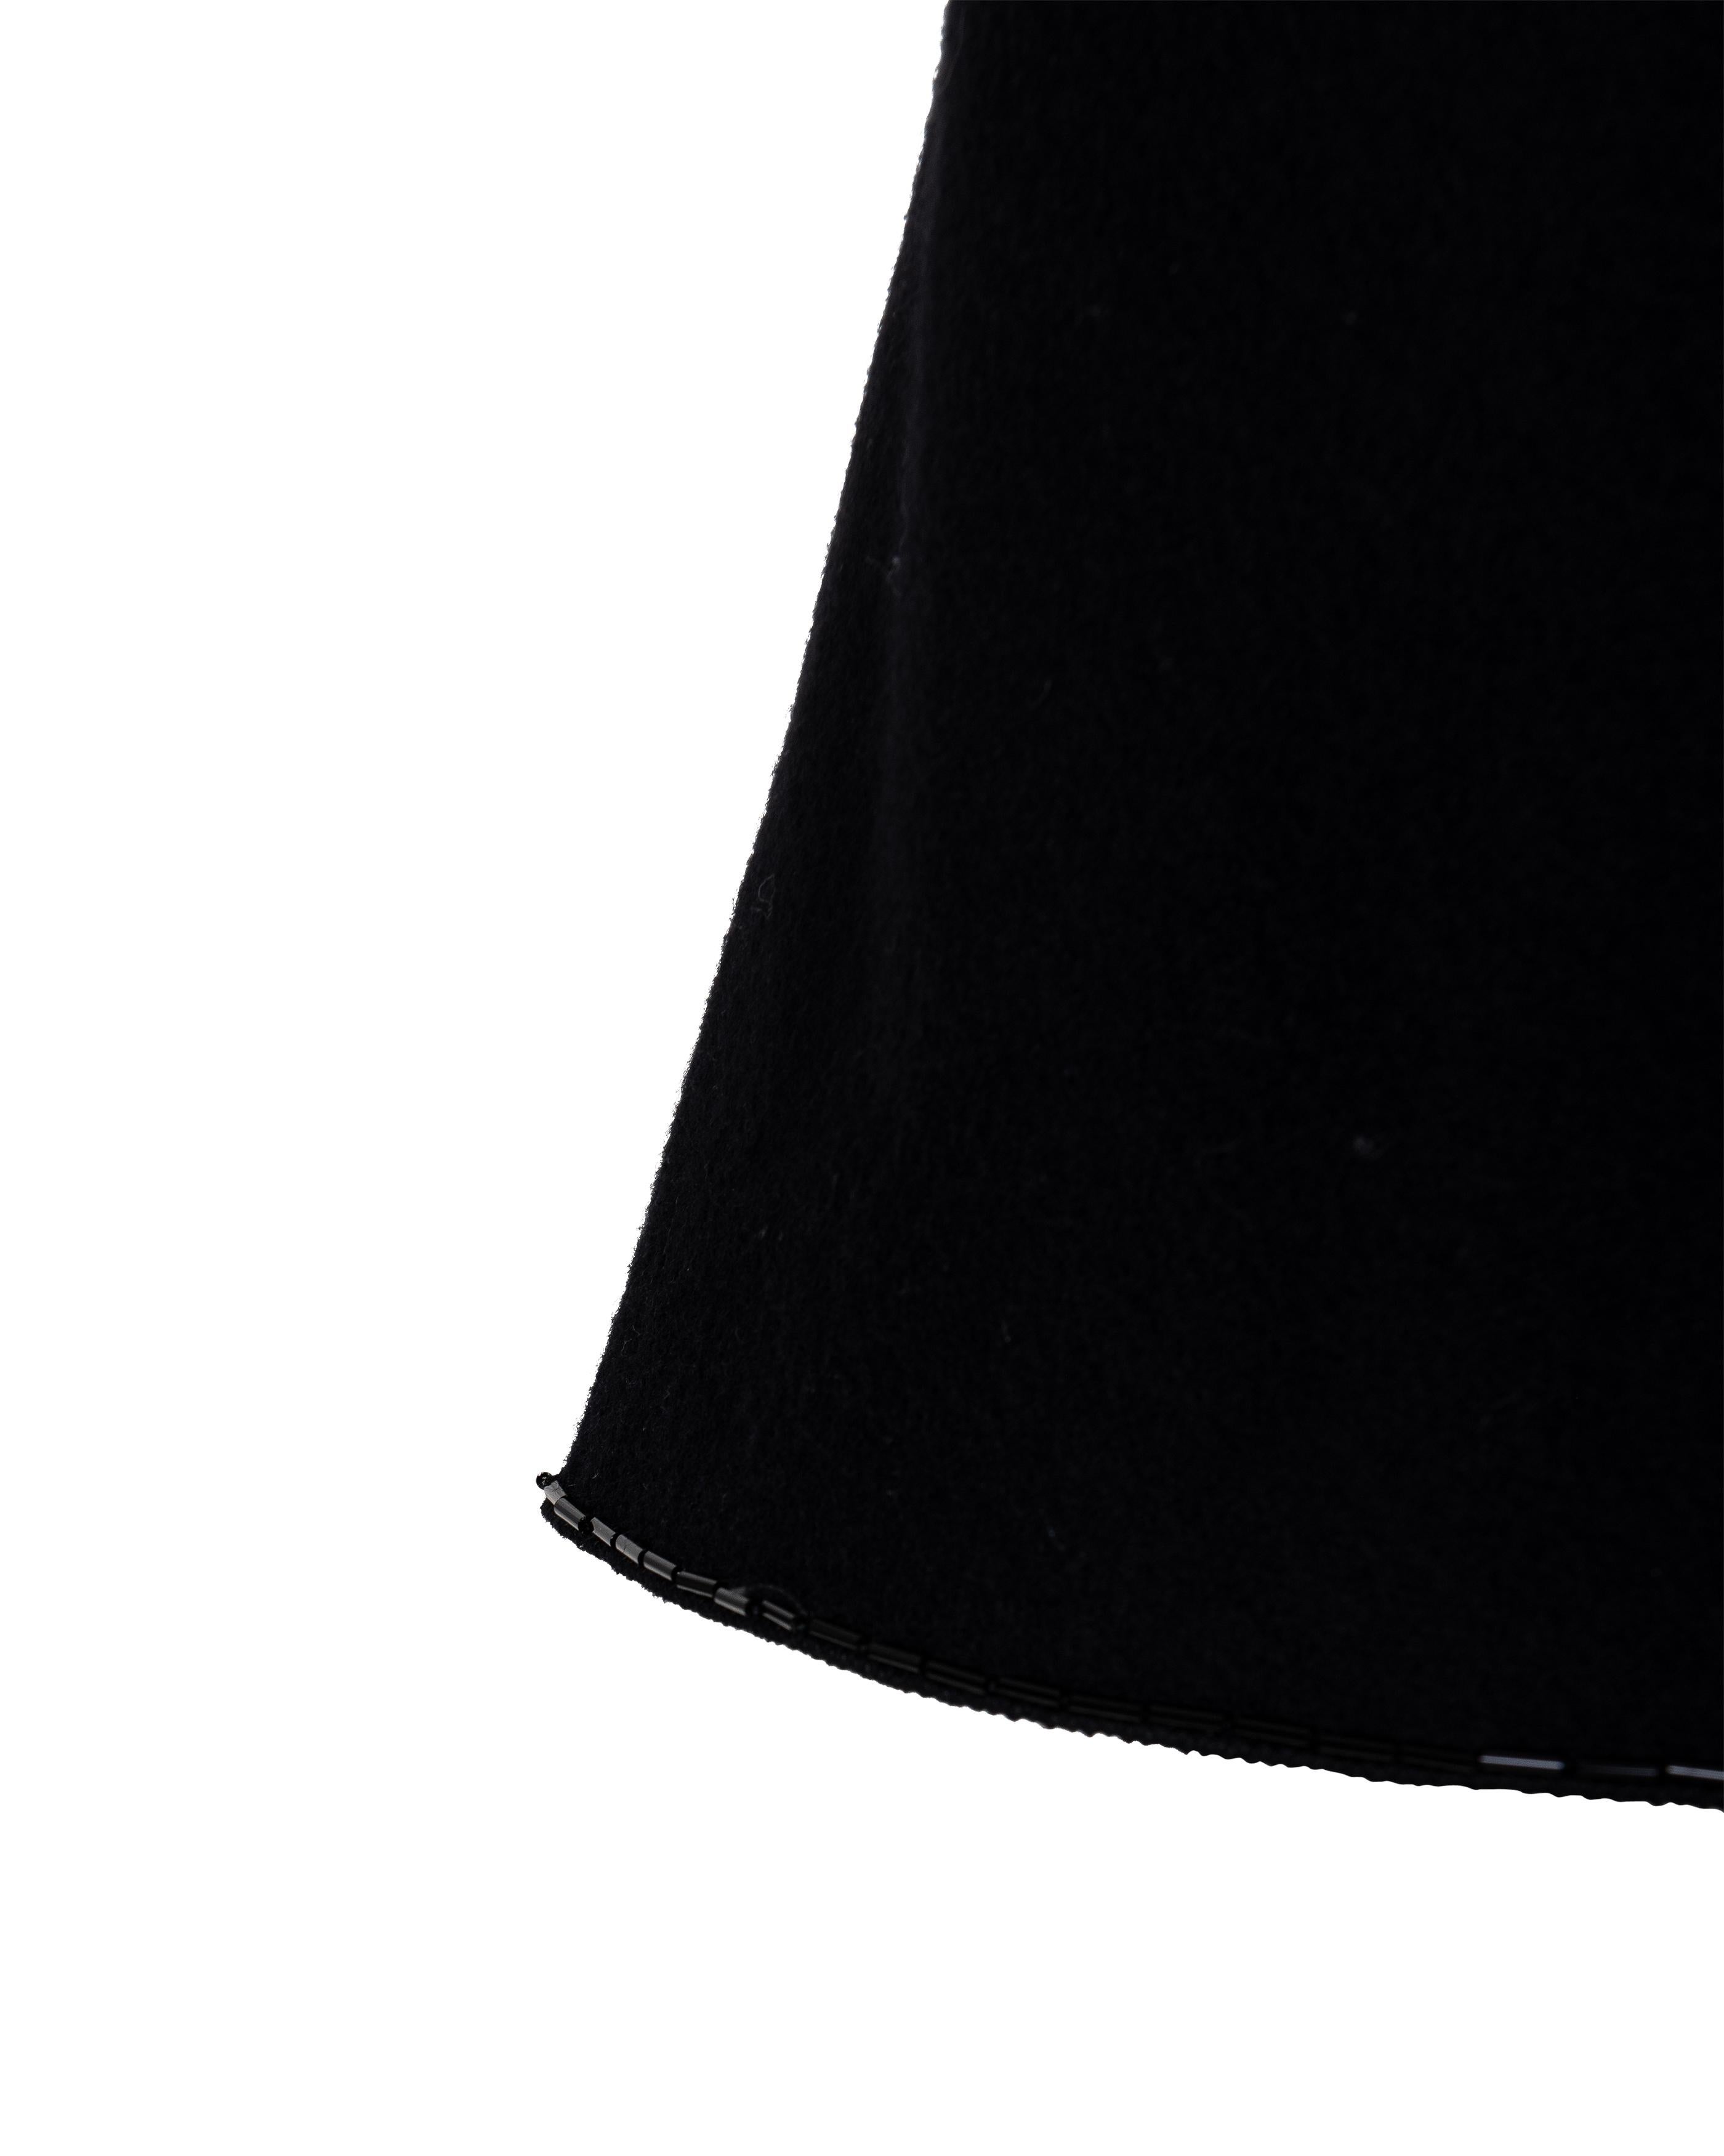 A/W 1997 Prada by Miuccia Prada Black Wool Mini Dress with Beaded Trim 3